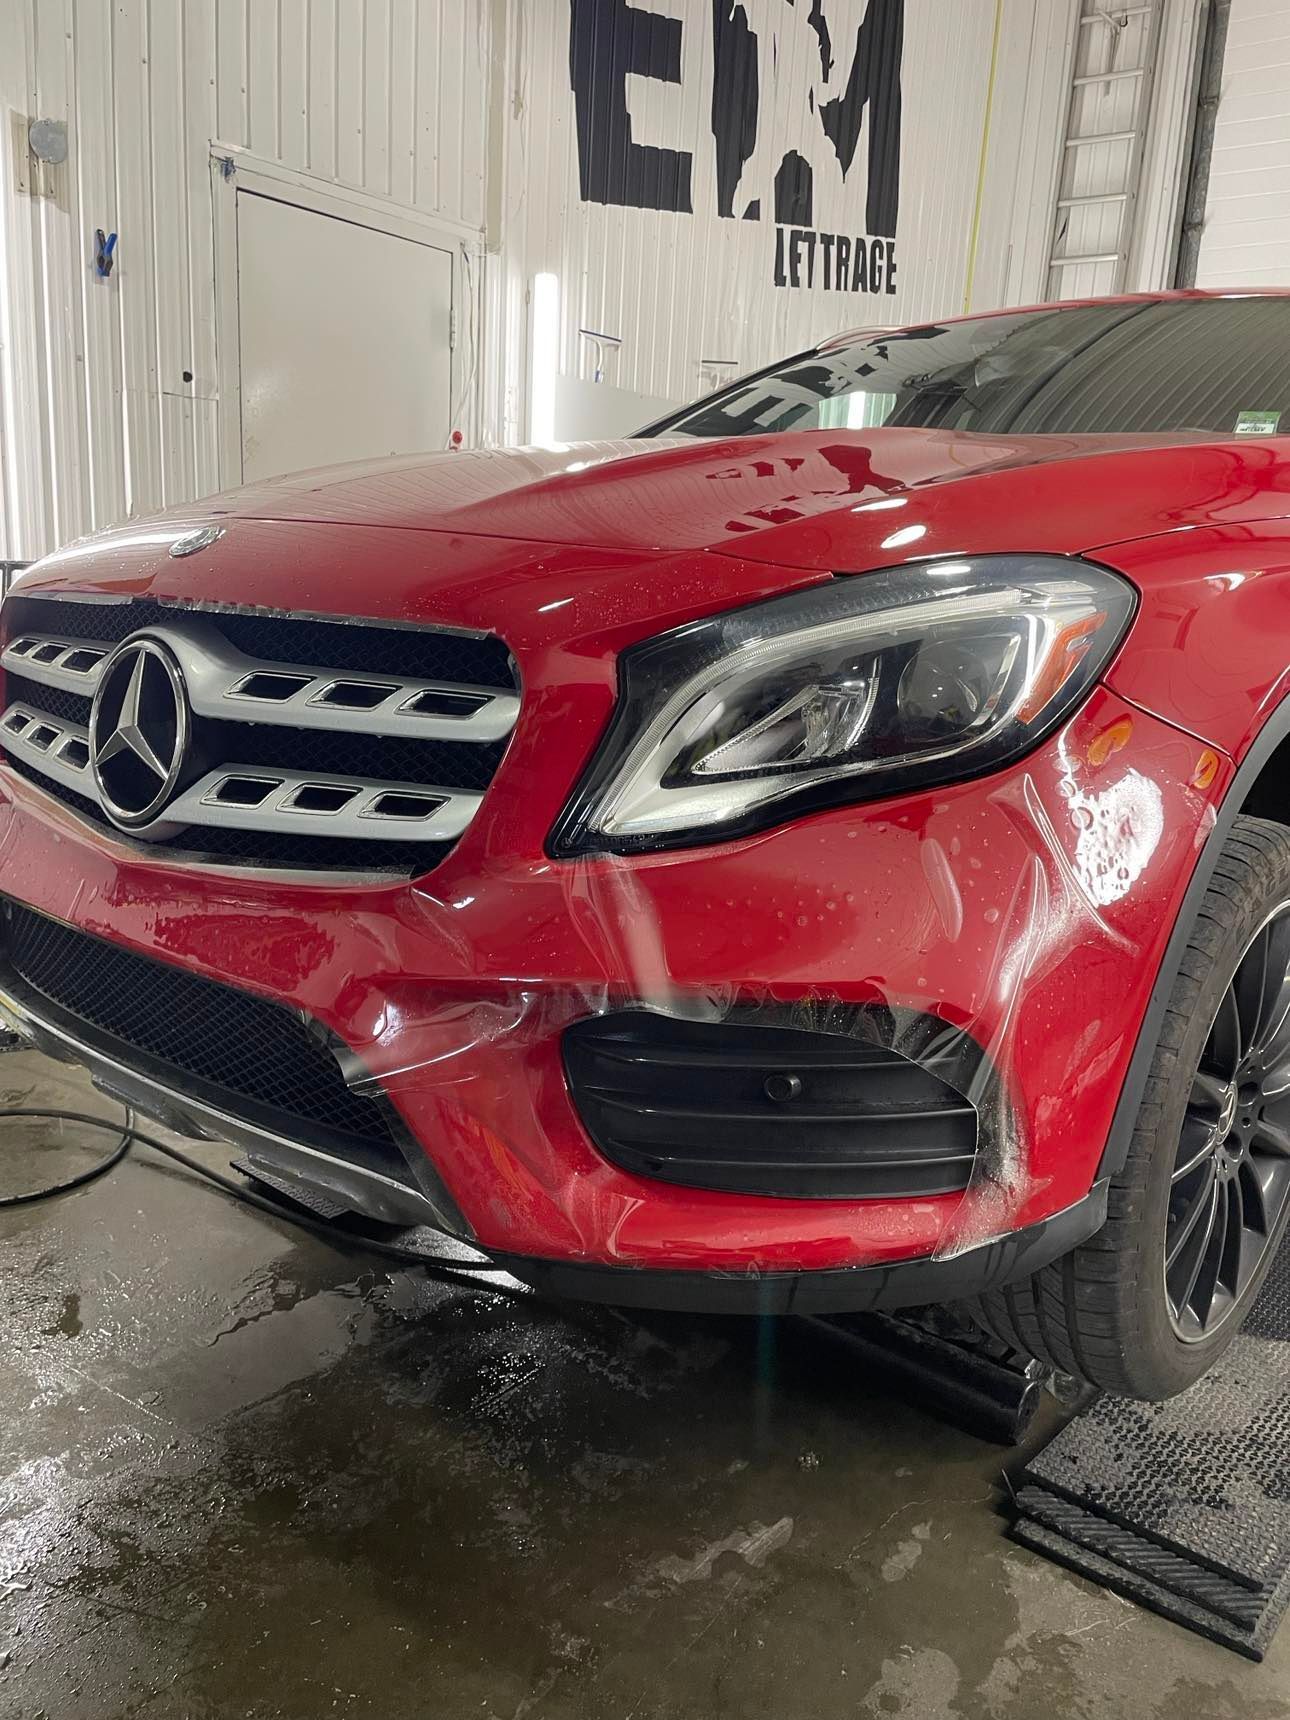 Une Mercedes Benz rouge est garée dans un garage.